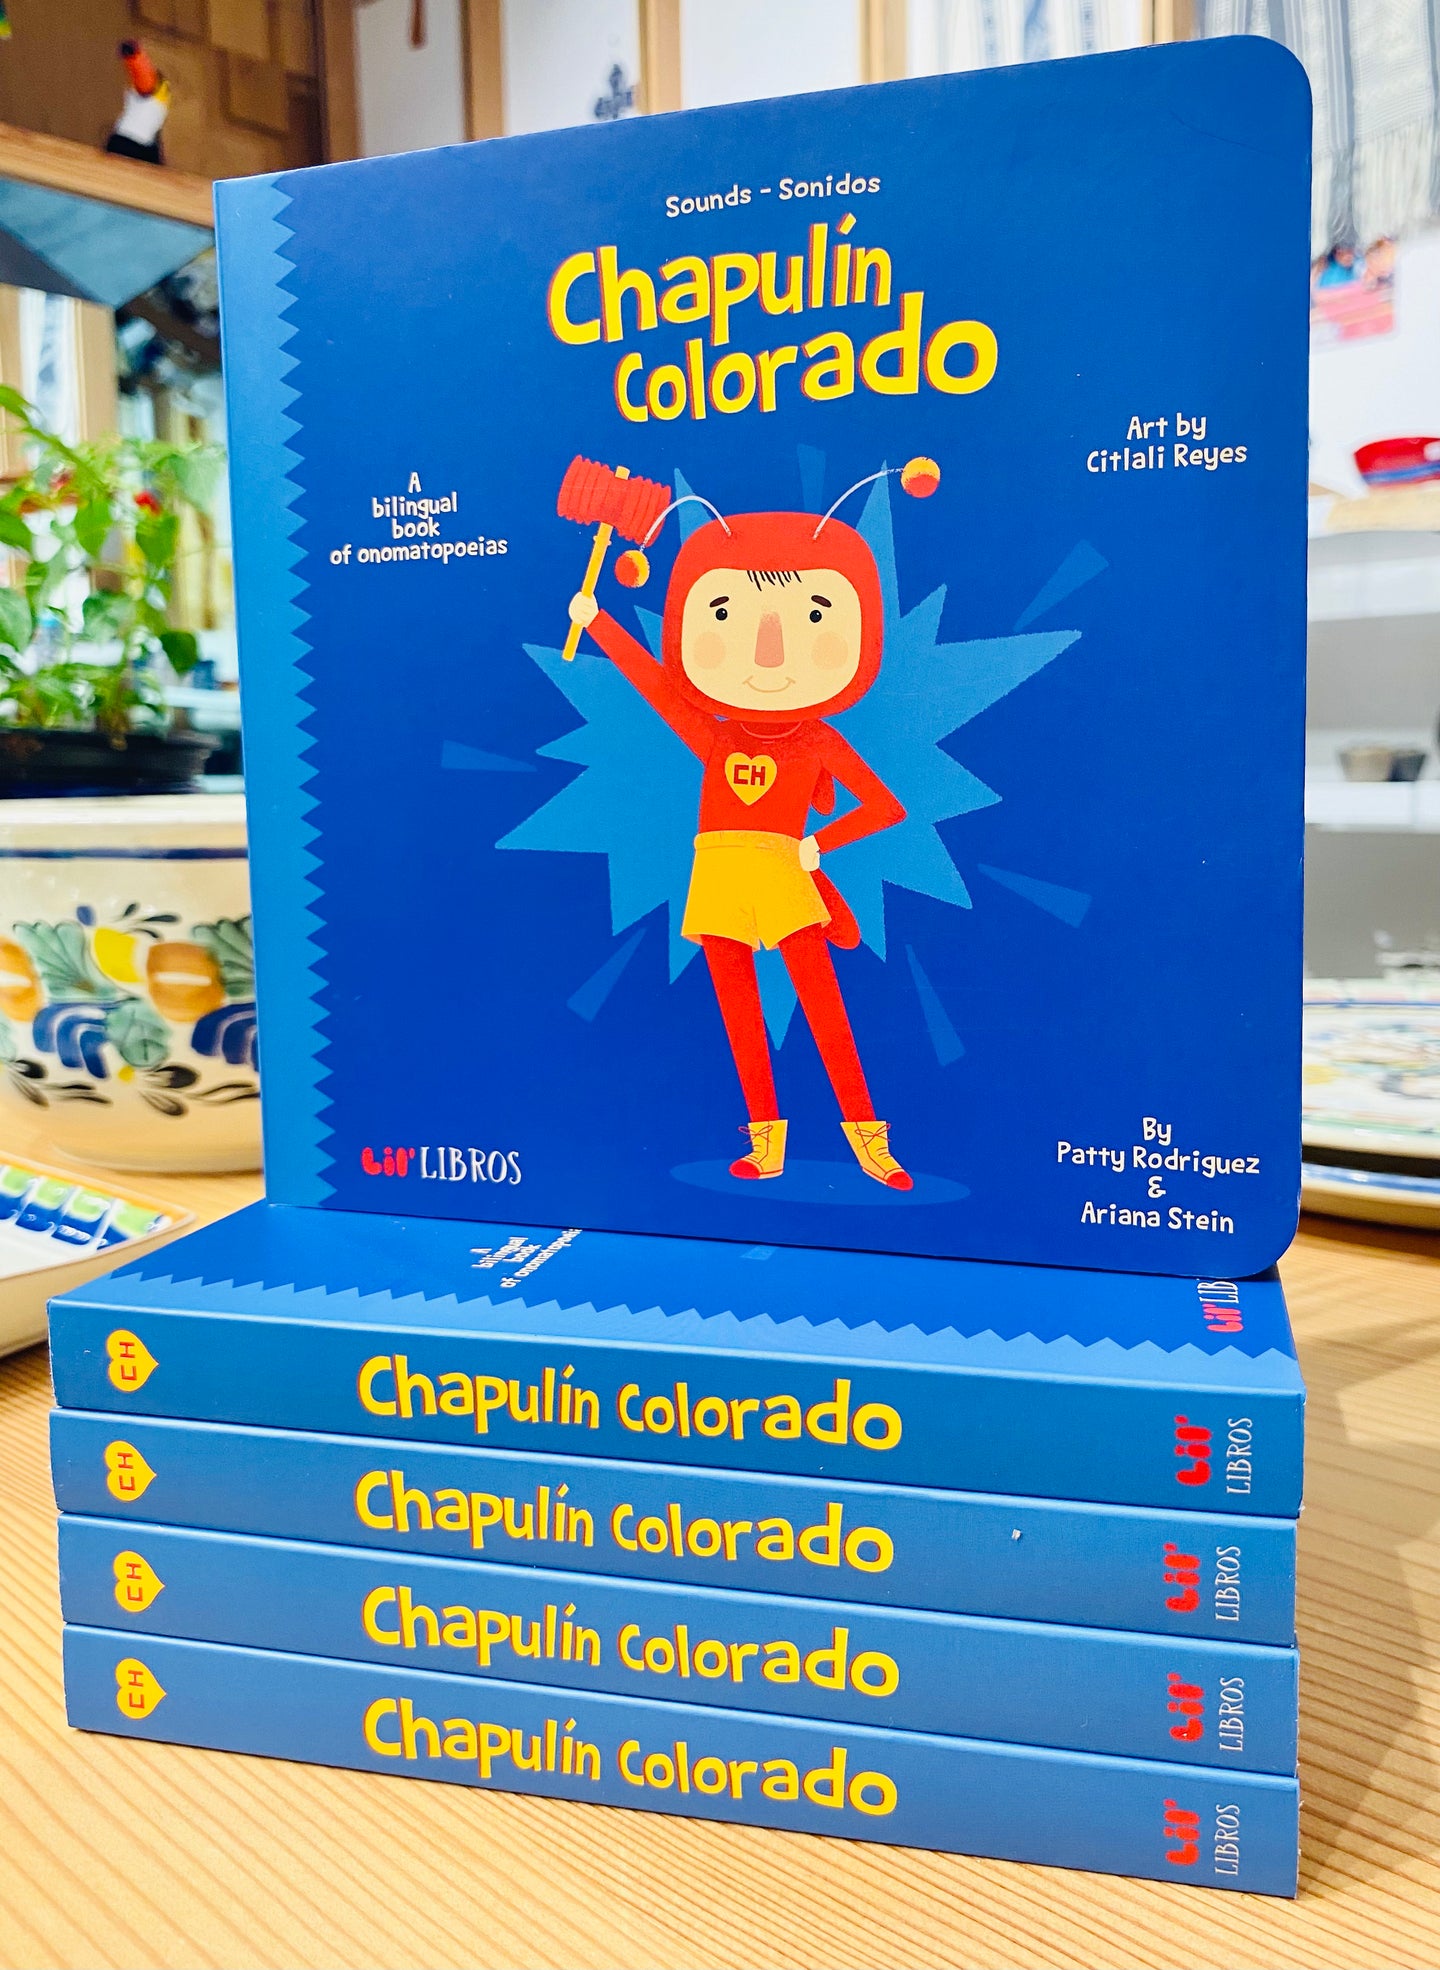 Kids’ Bilingual Book: Sounds with el Chapulín Colorado